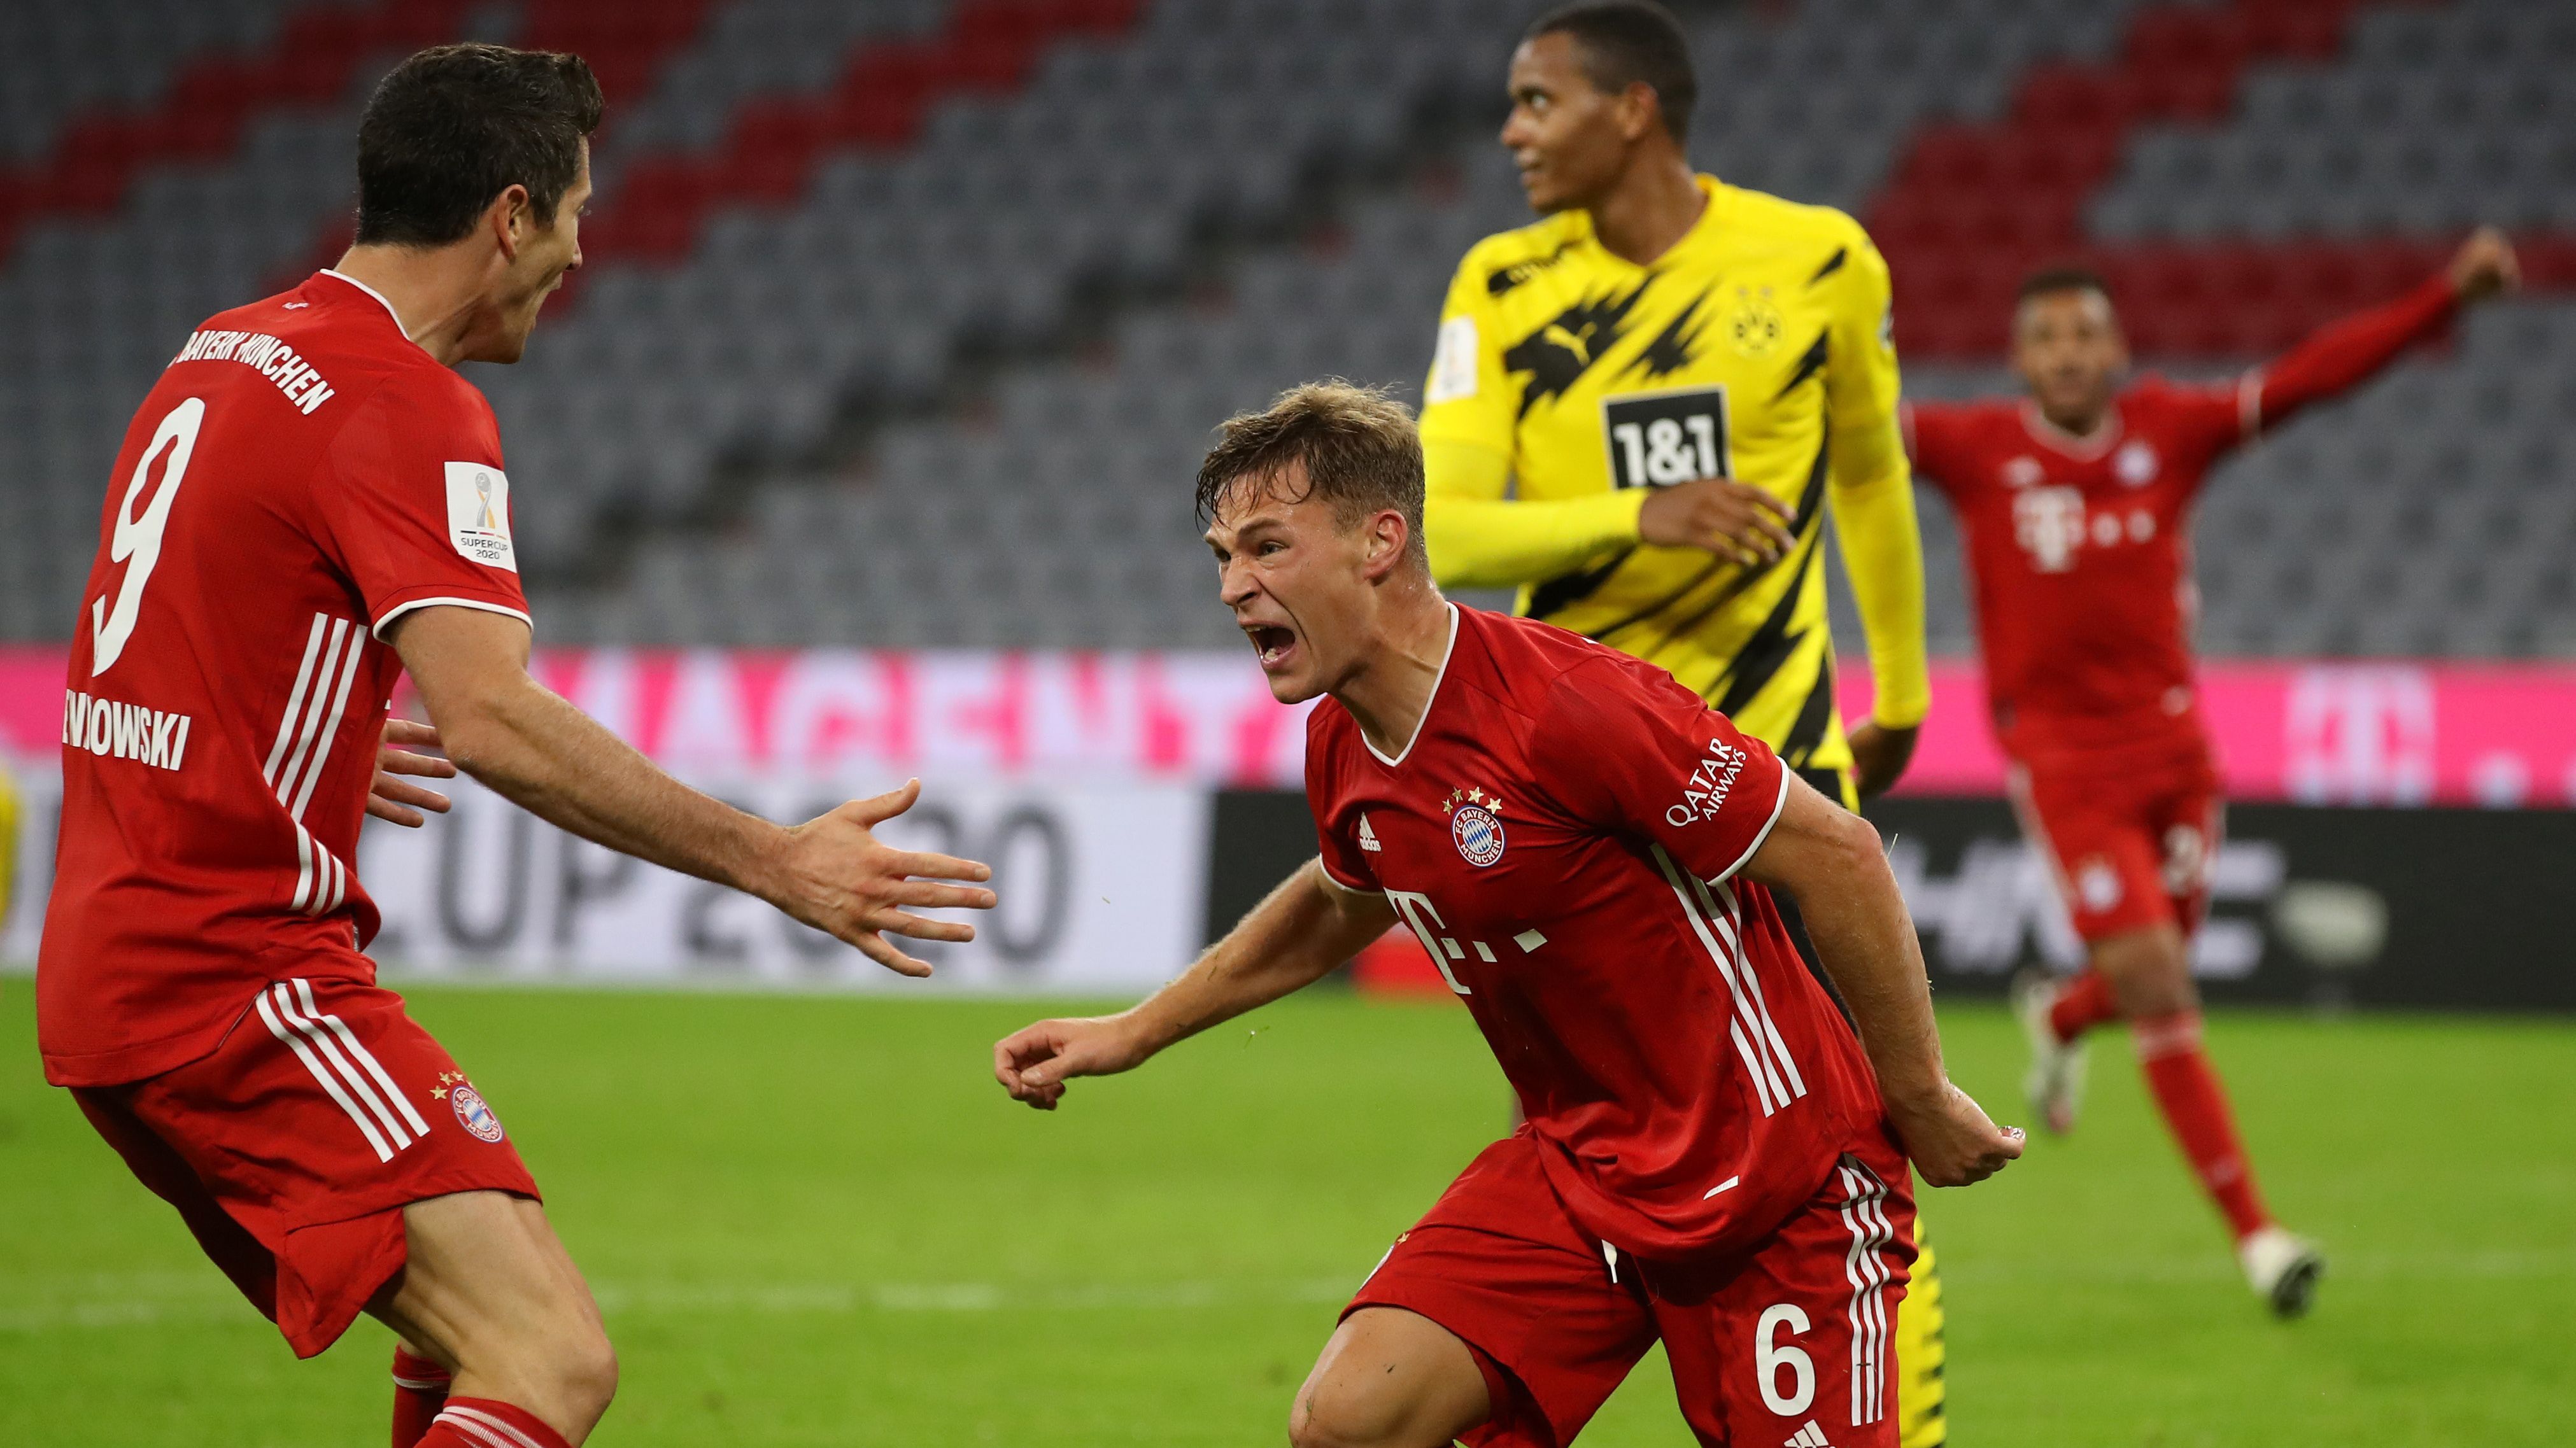 
                <strong>DFL-Supercup 2020: FC Bayern und Borussia Dortmund in der Einzelkritik</strong><br>
                Der FC Bayern schlägt Borussia Dortmund im Supercup mit 3:2. Die Mannschaft von Trainer Hansi Flick sichert sich damit den fünften Titel im Jahr 2020. ran.de benotet alle Akteure beider Teams in der Einzelkritik.
              